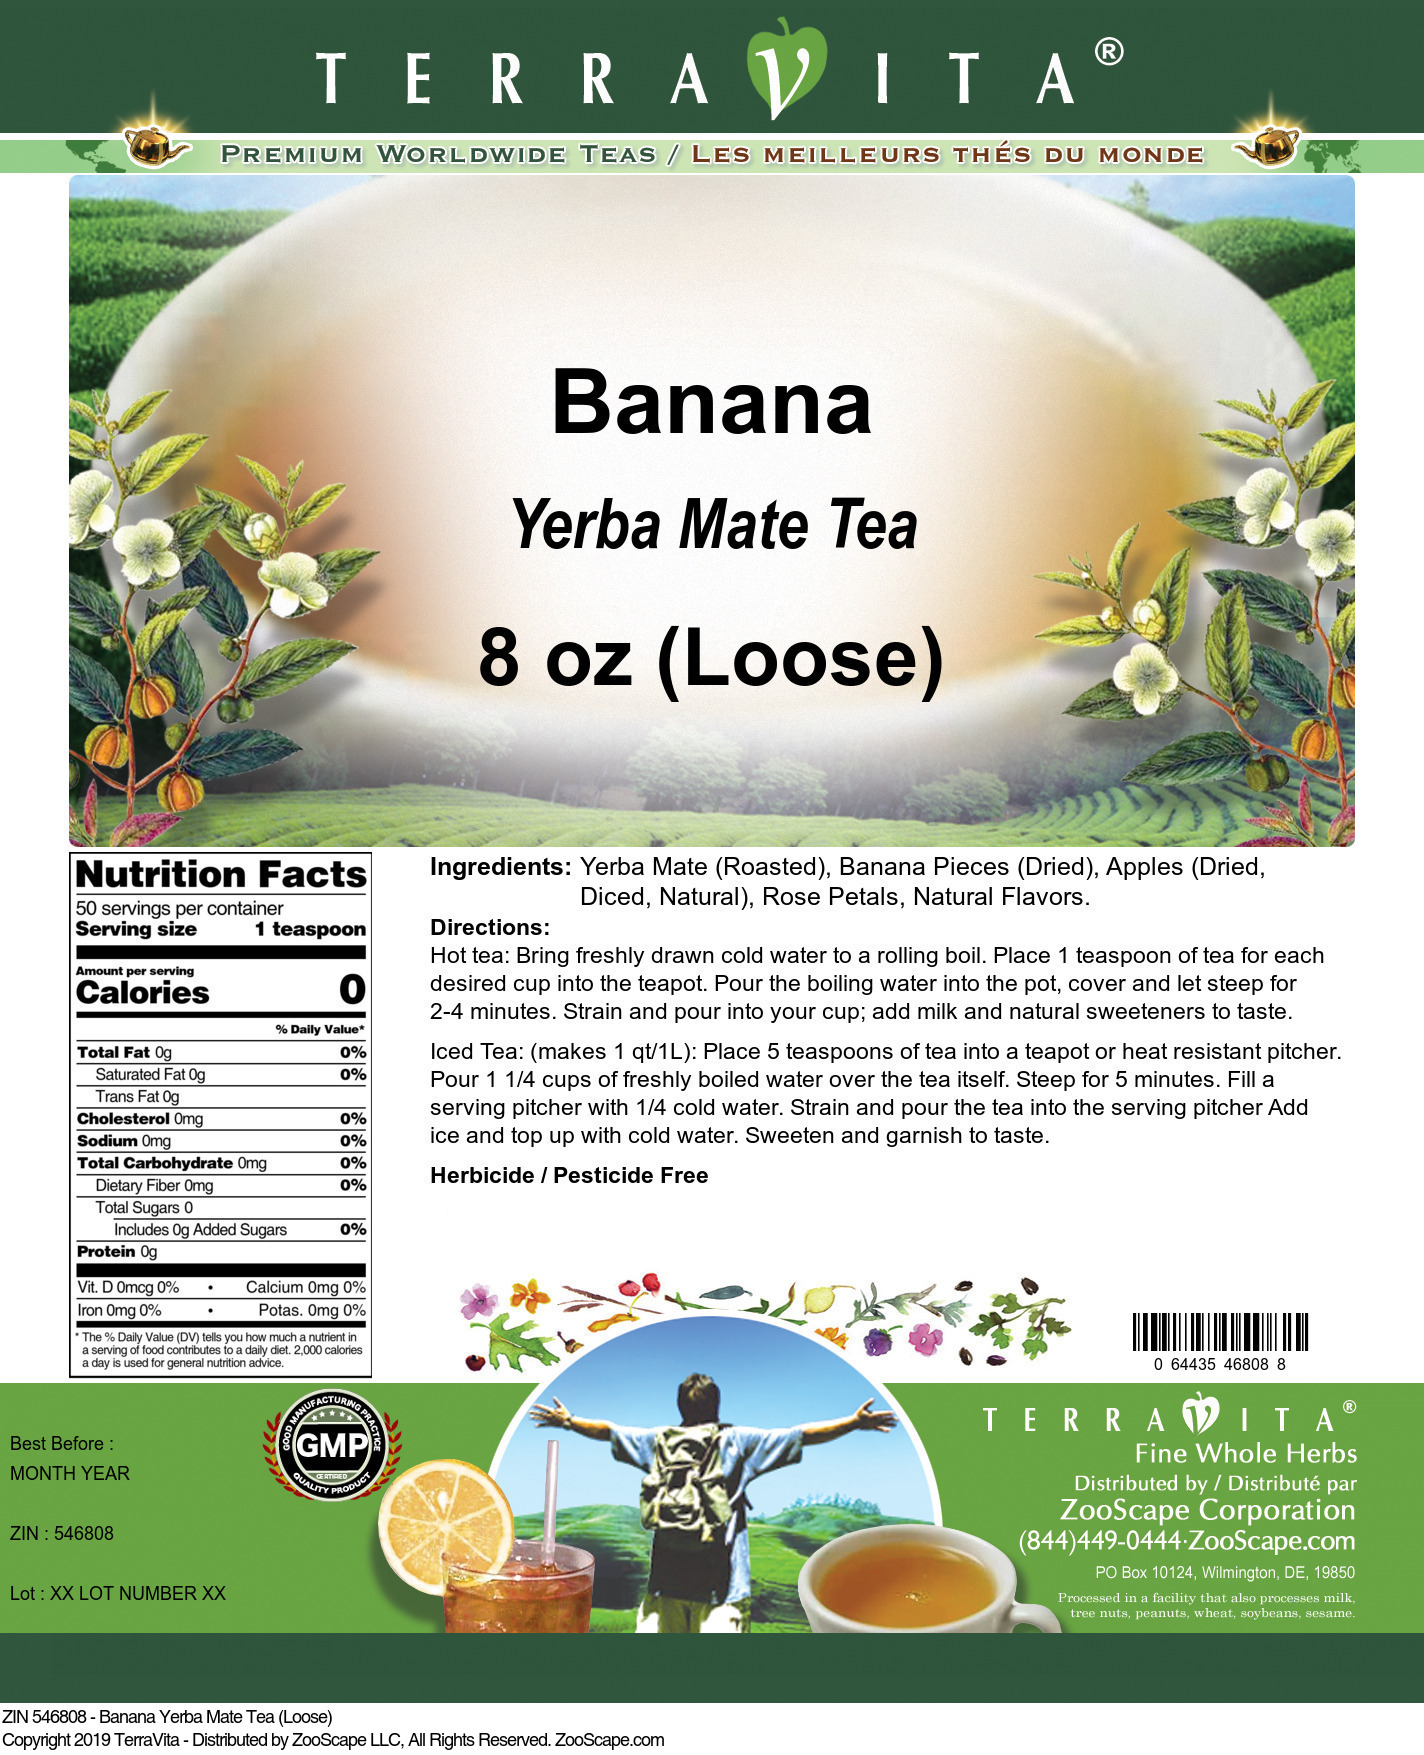 Banana Yerba Mate Tea (Loose) - Label